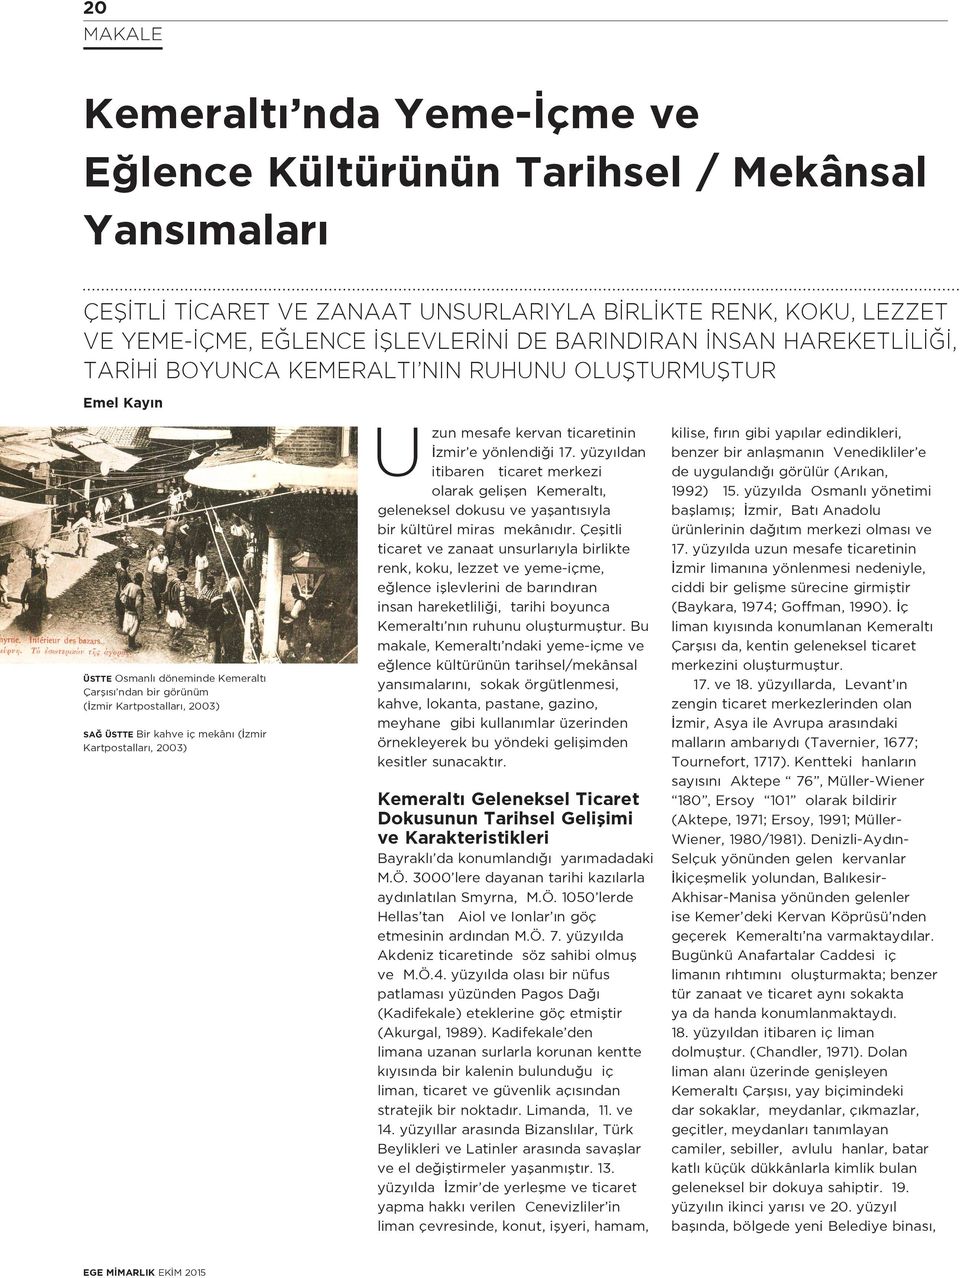 (İzmir Kartpostalları, 2003) Uzun mesafe kervan ticaretinin İzmir e yönlendiği 17.